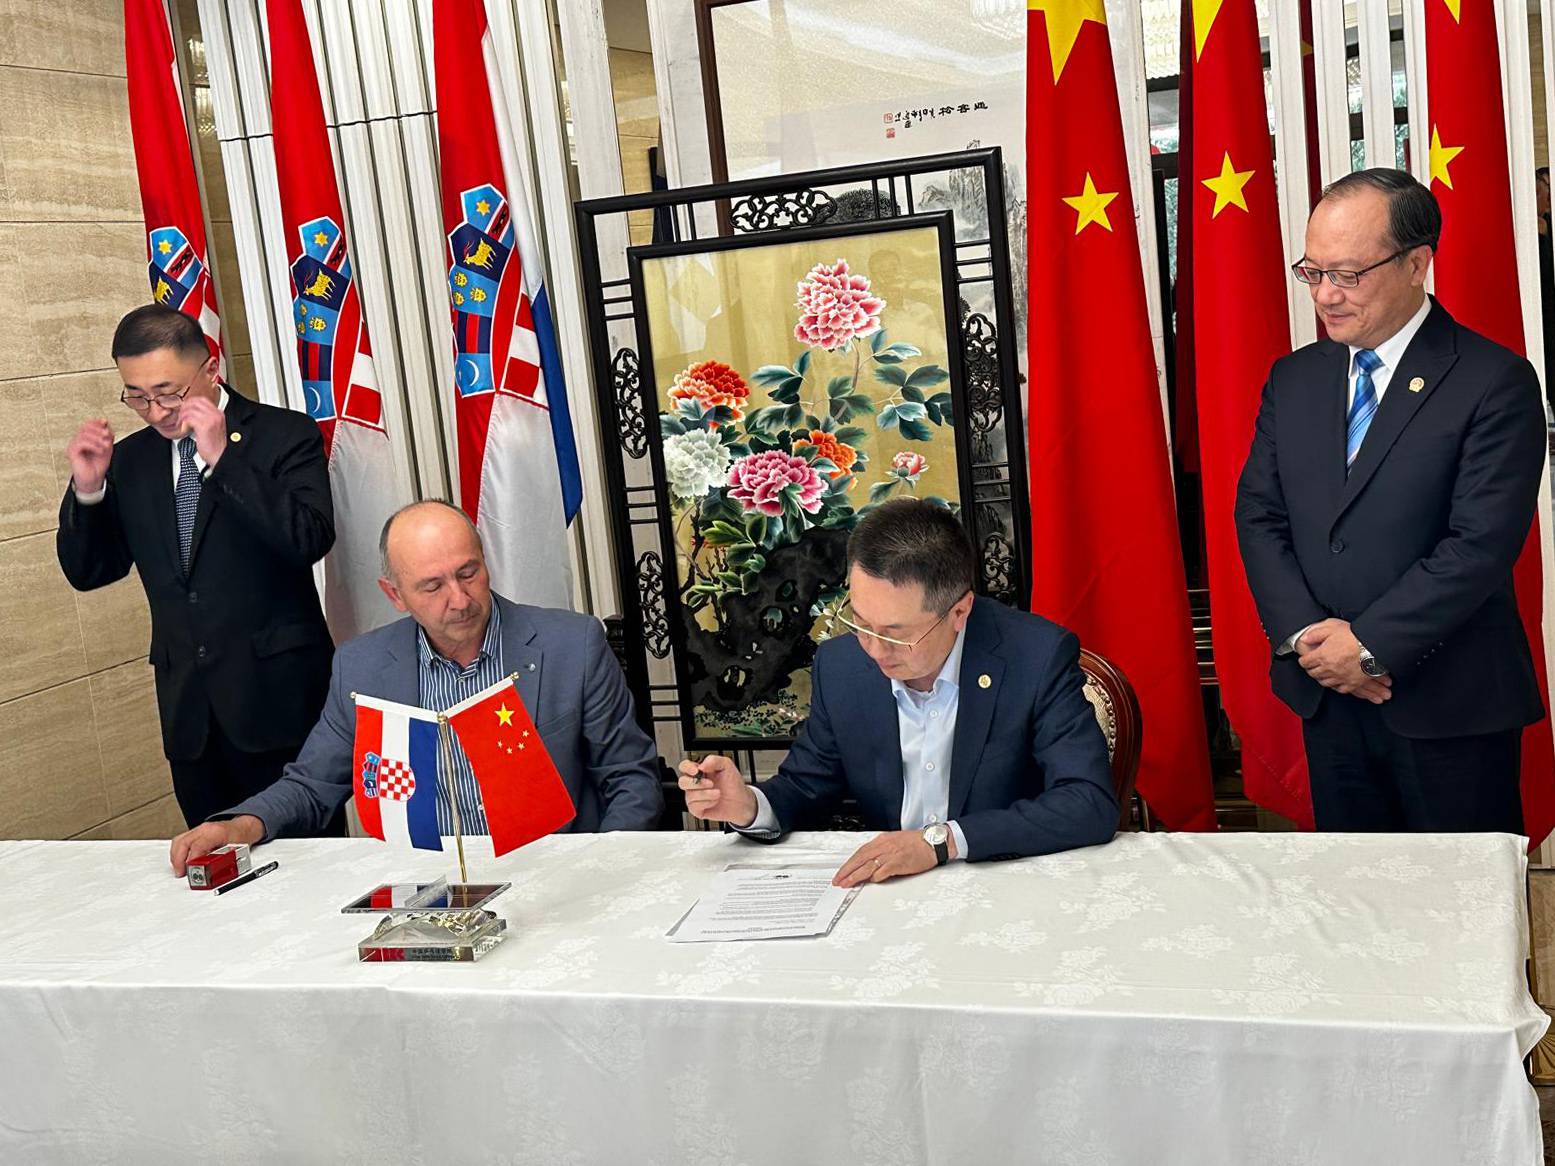 Stolnoteniski pakt: u Hrvatsku će doći kineski treneri, a naši će igrači ići u najjaču zemlju svijeta